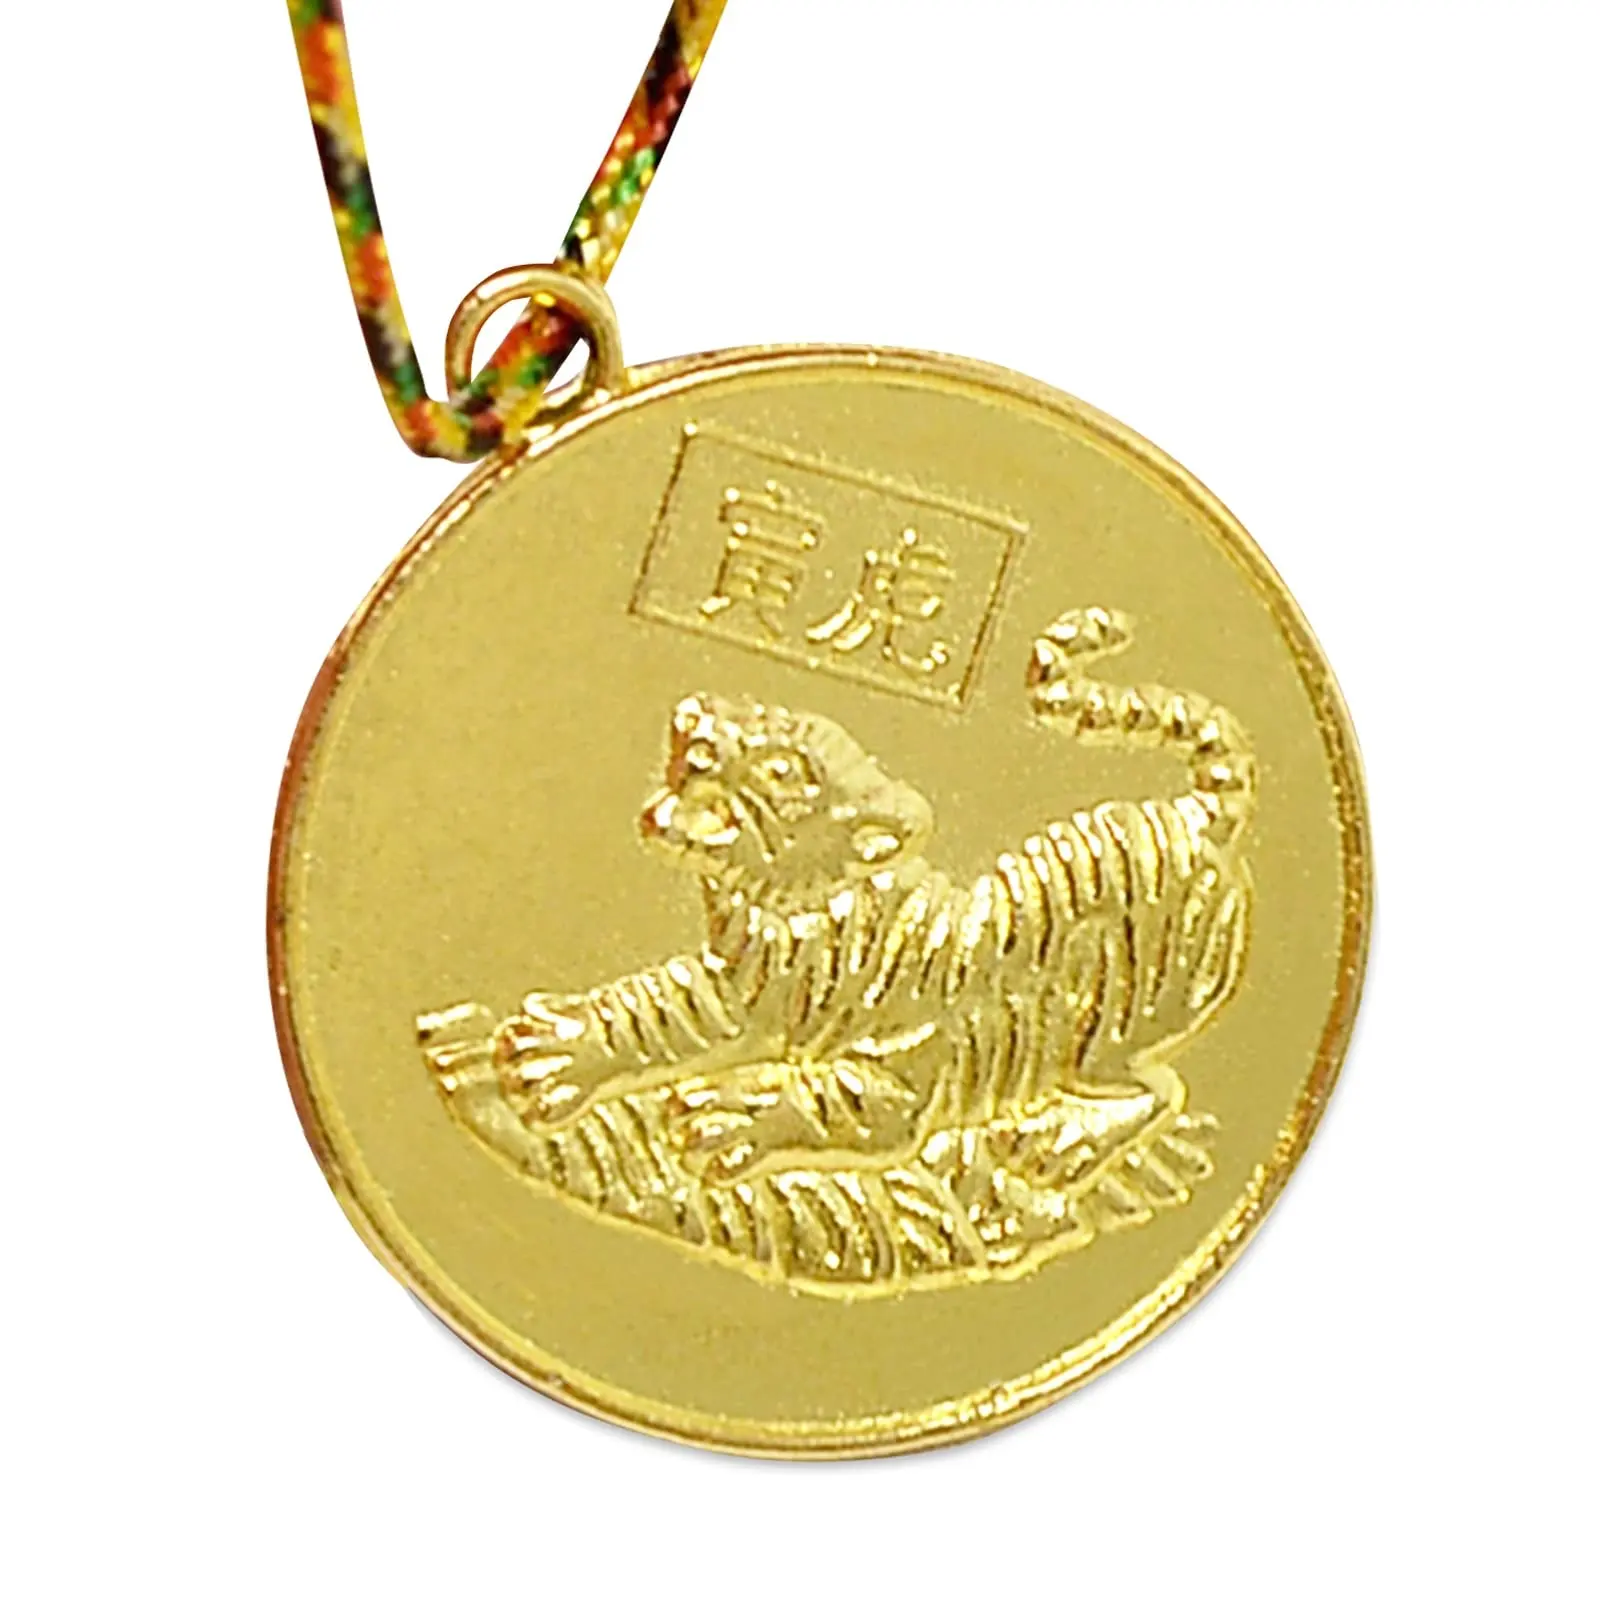 ราศีเสือโชคลาภเหรียญทองแดงรอบสร้อยคอ/ตกแต่ง/ของขวัญ + ถุงเครื่องประดับสีแดง